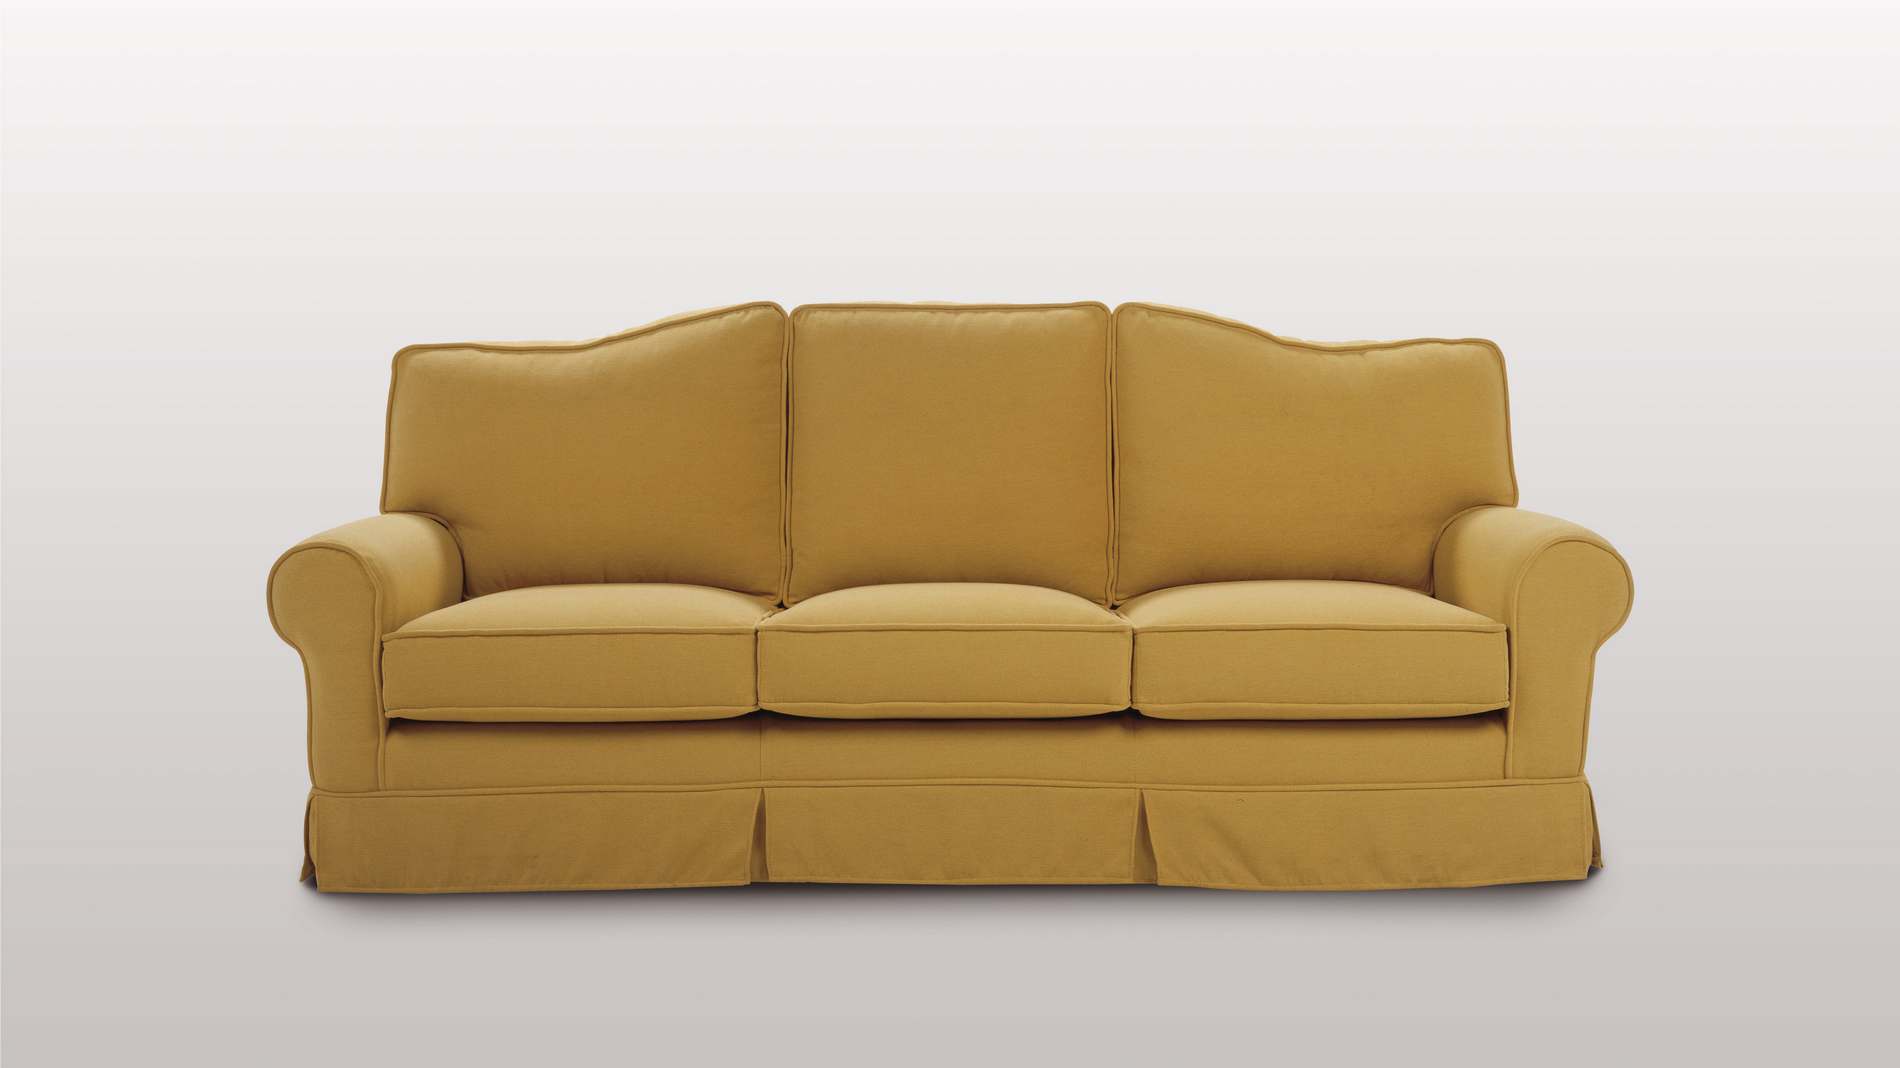 produzione artigianale divani sveva divano classico